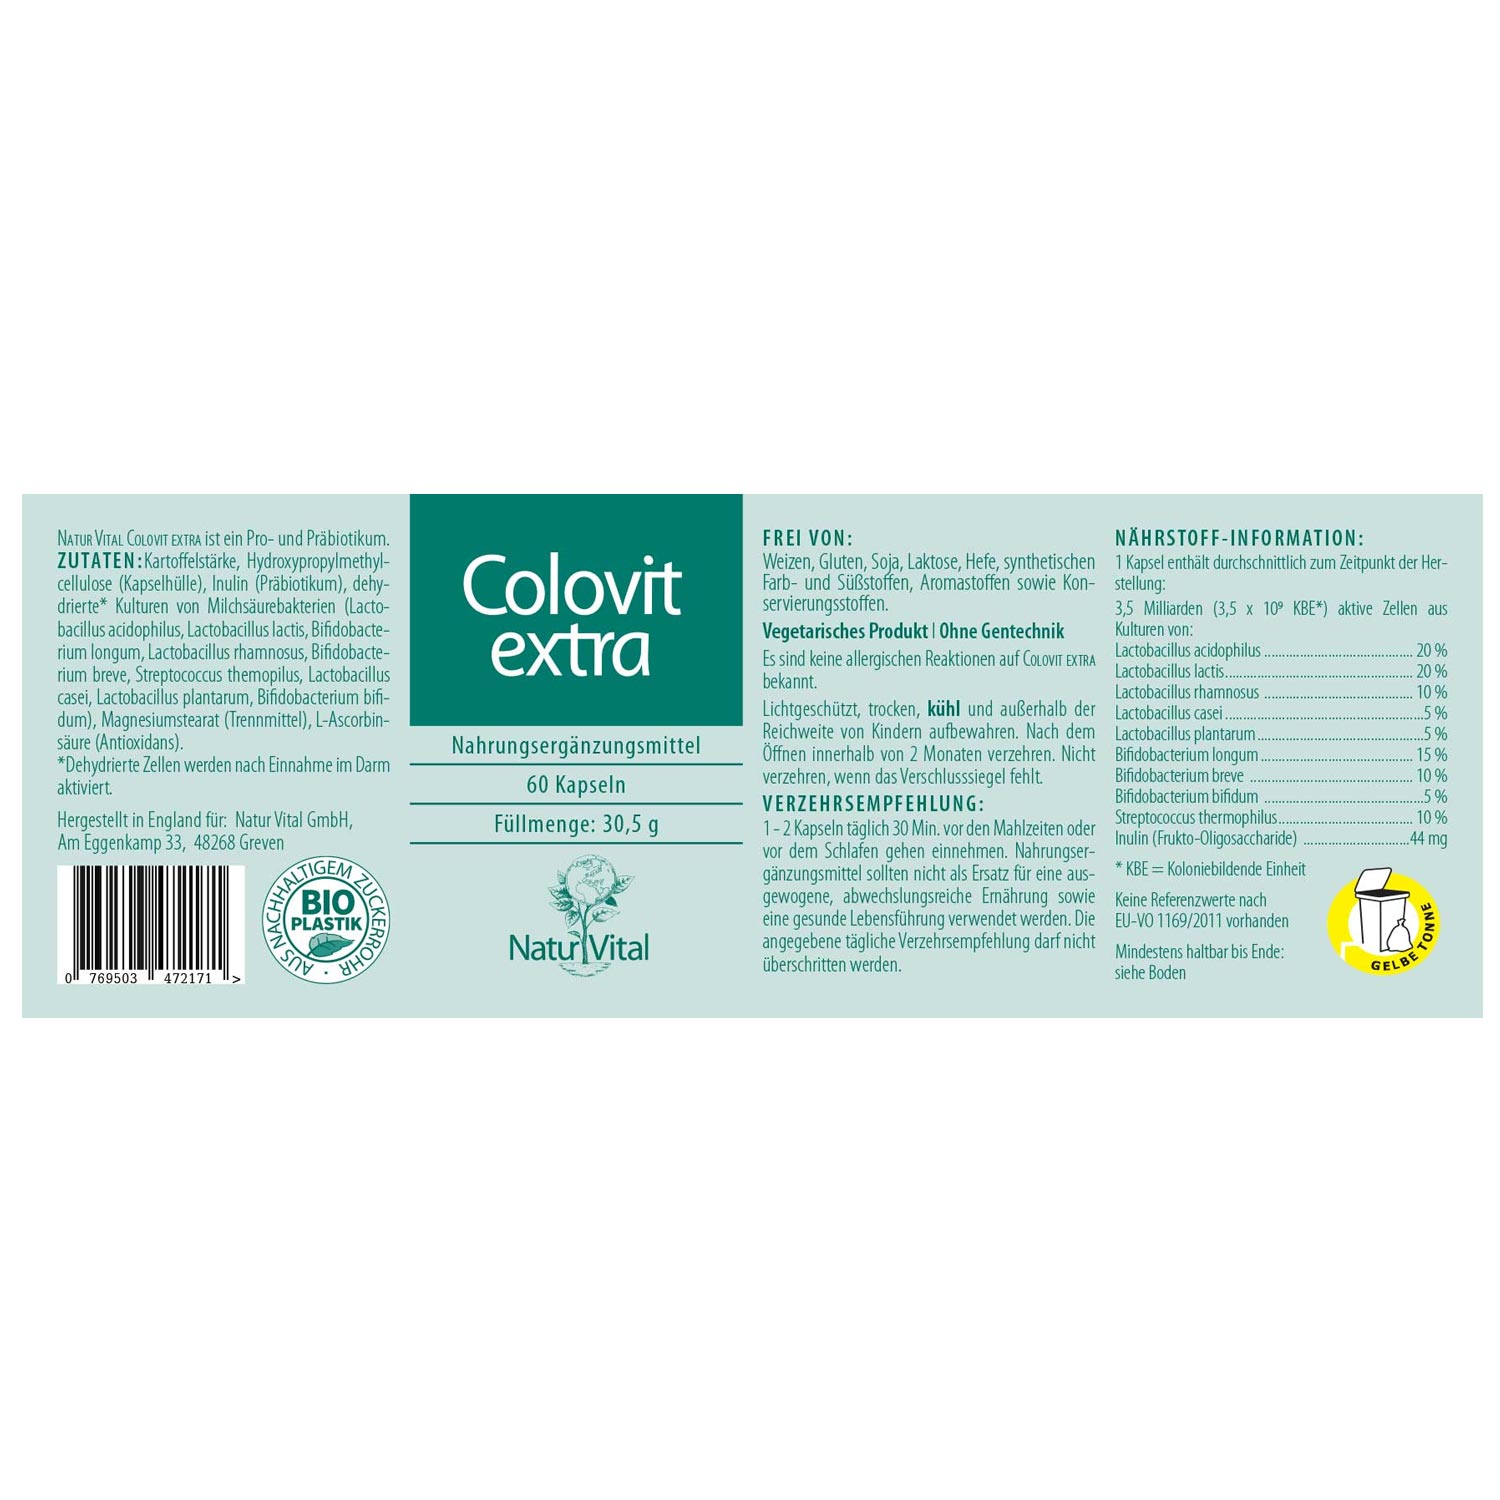 Colovit Extra von Natur Vital - Etikett